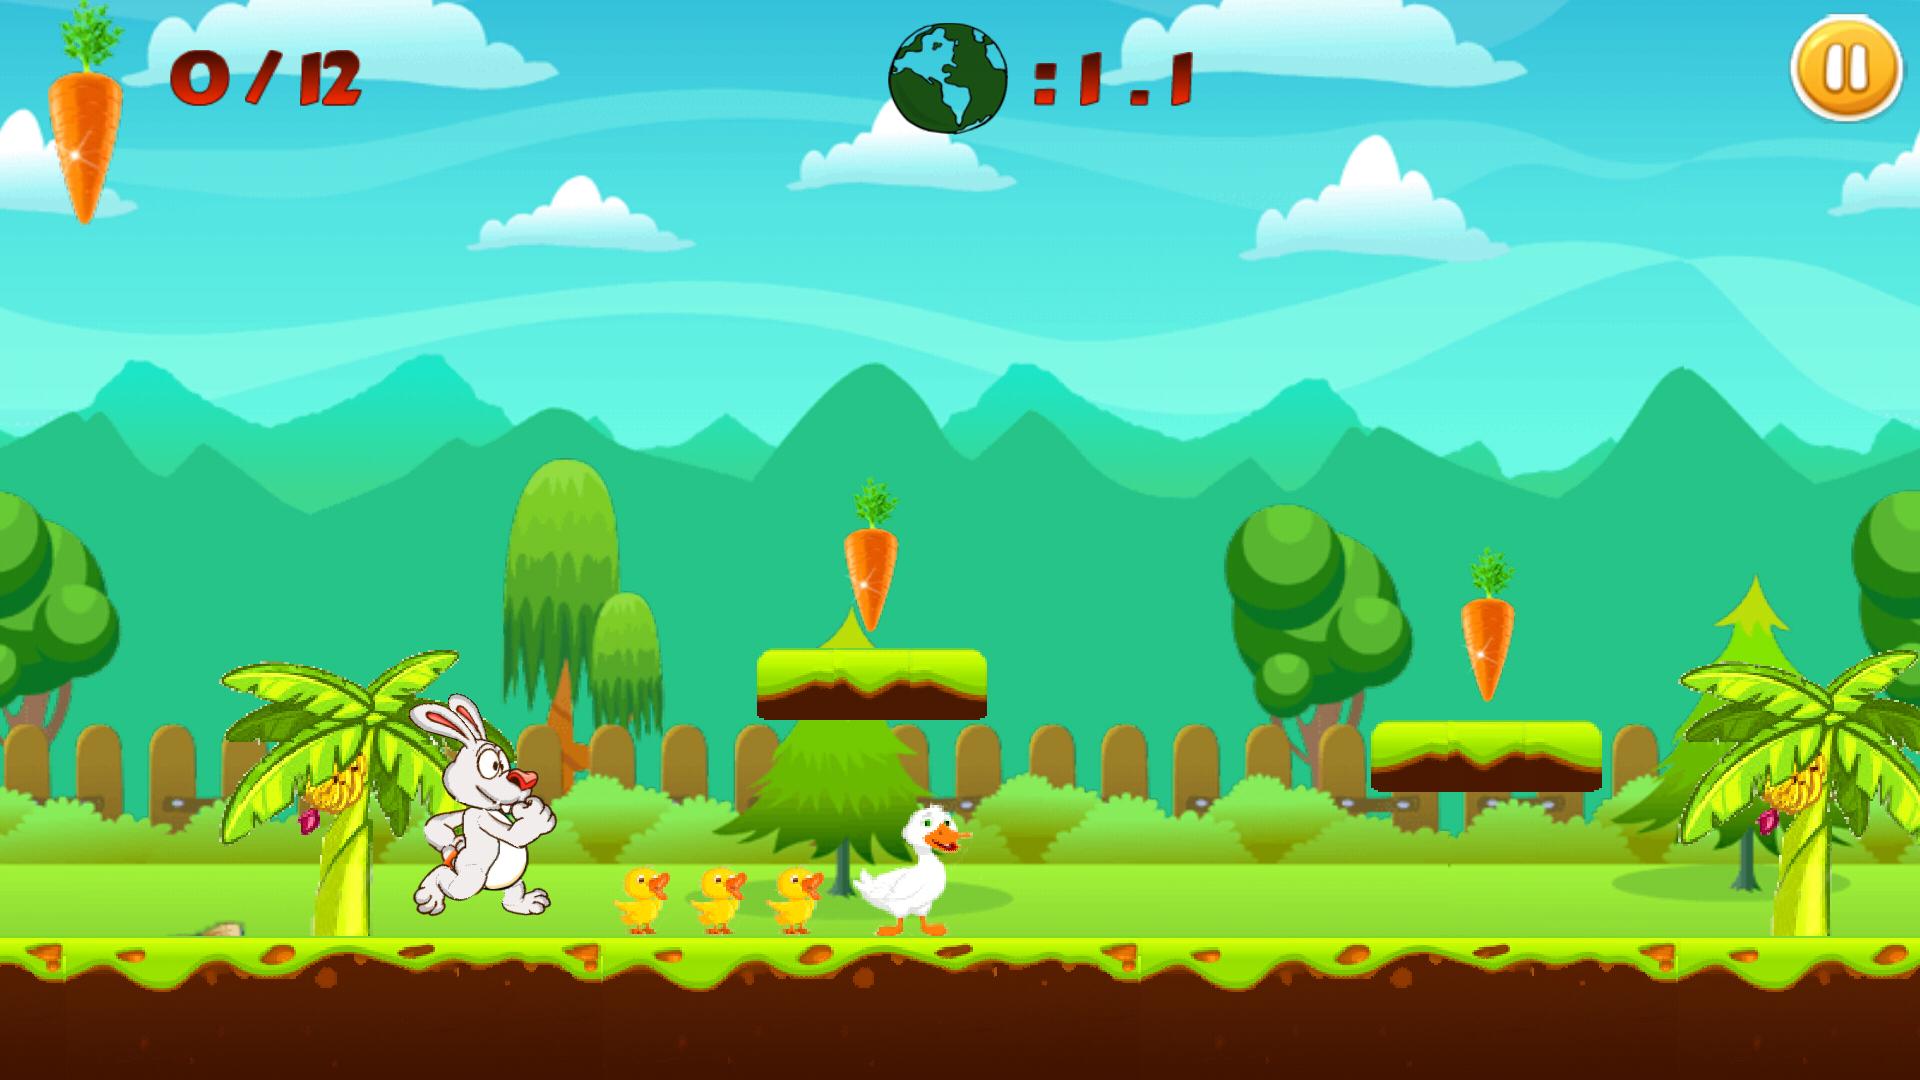 لعبة الأرنب والجزر for Android - APK Download